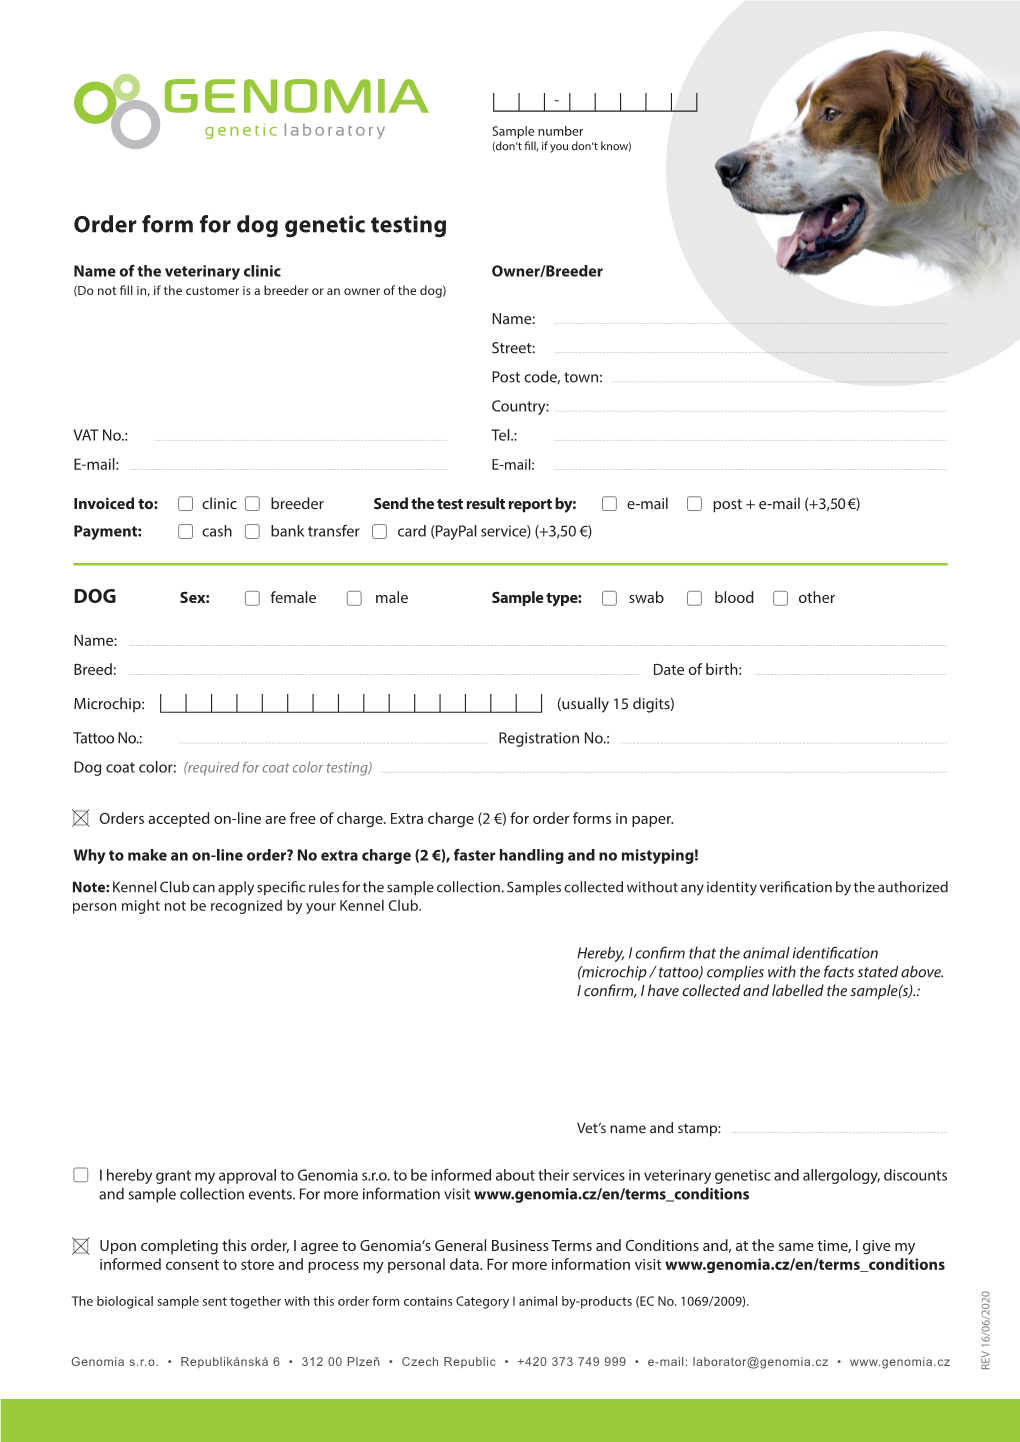 Order Form for Dog Genetic Testing